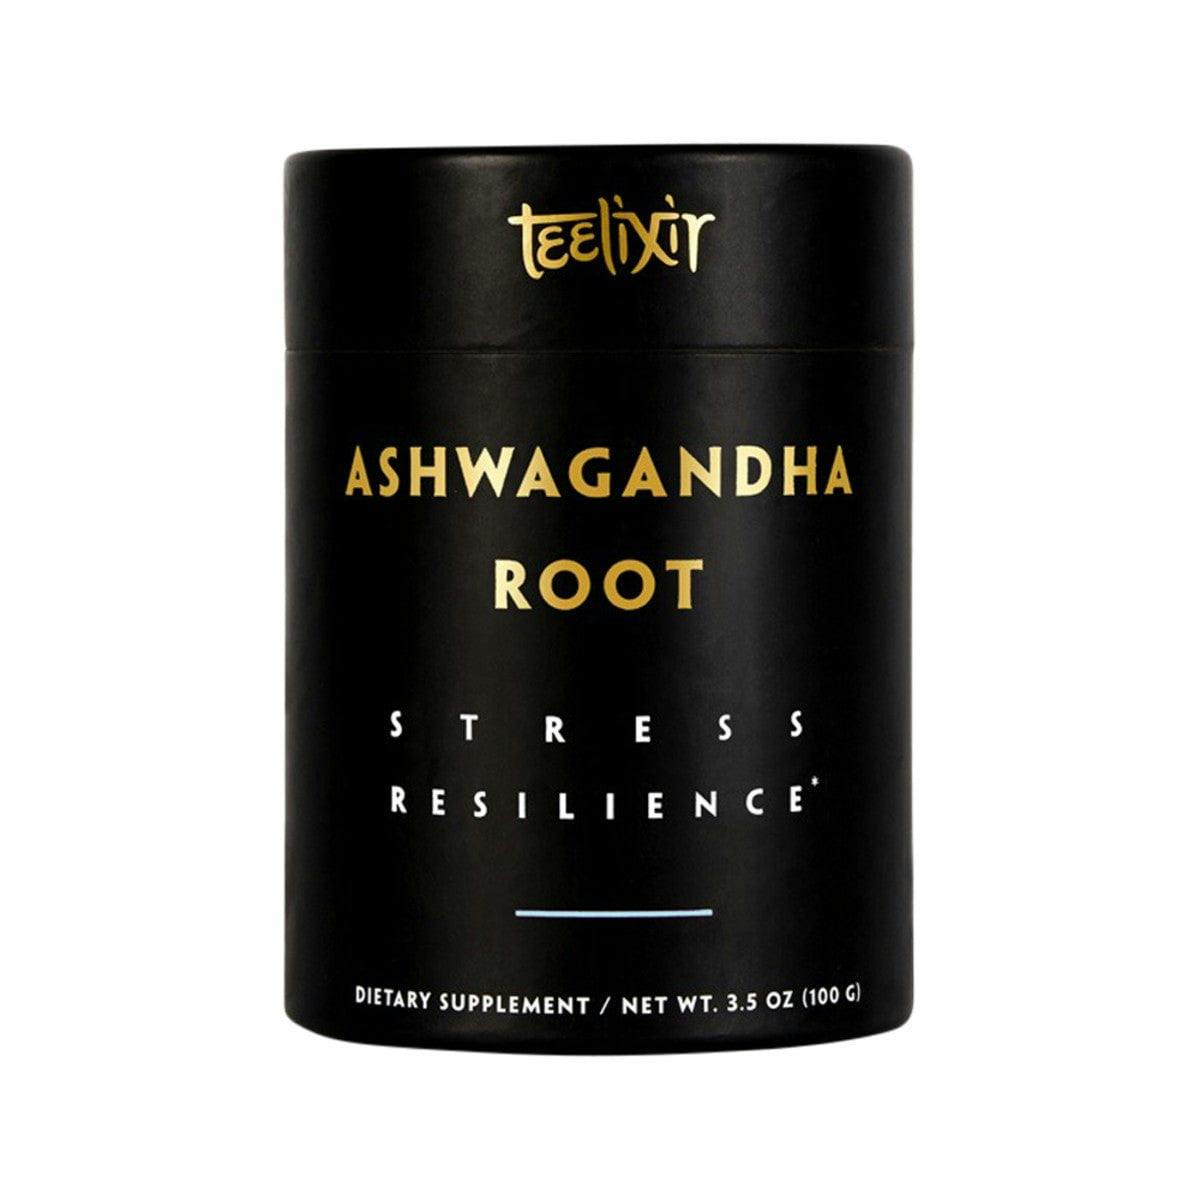 Teelixir Organic Ashwagandha Root (Stress Resiliance) 100g